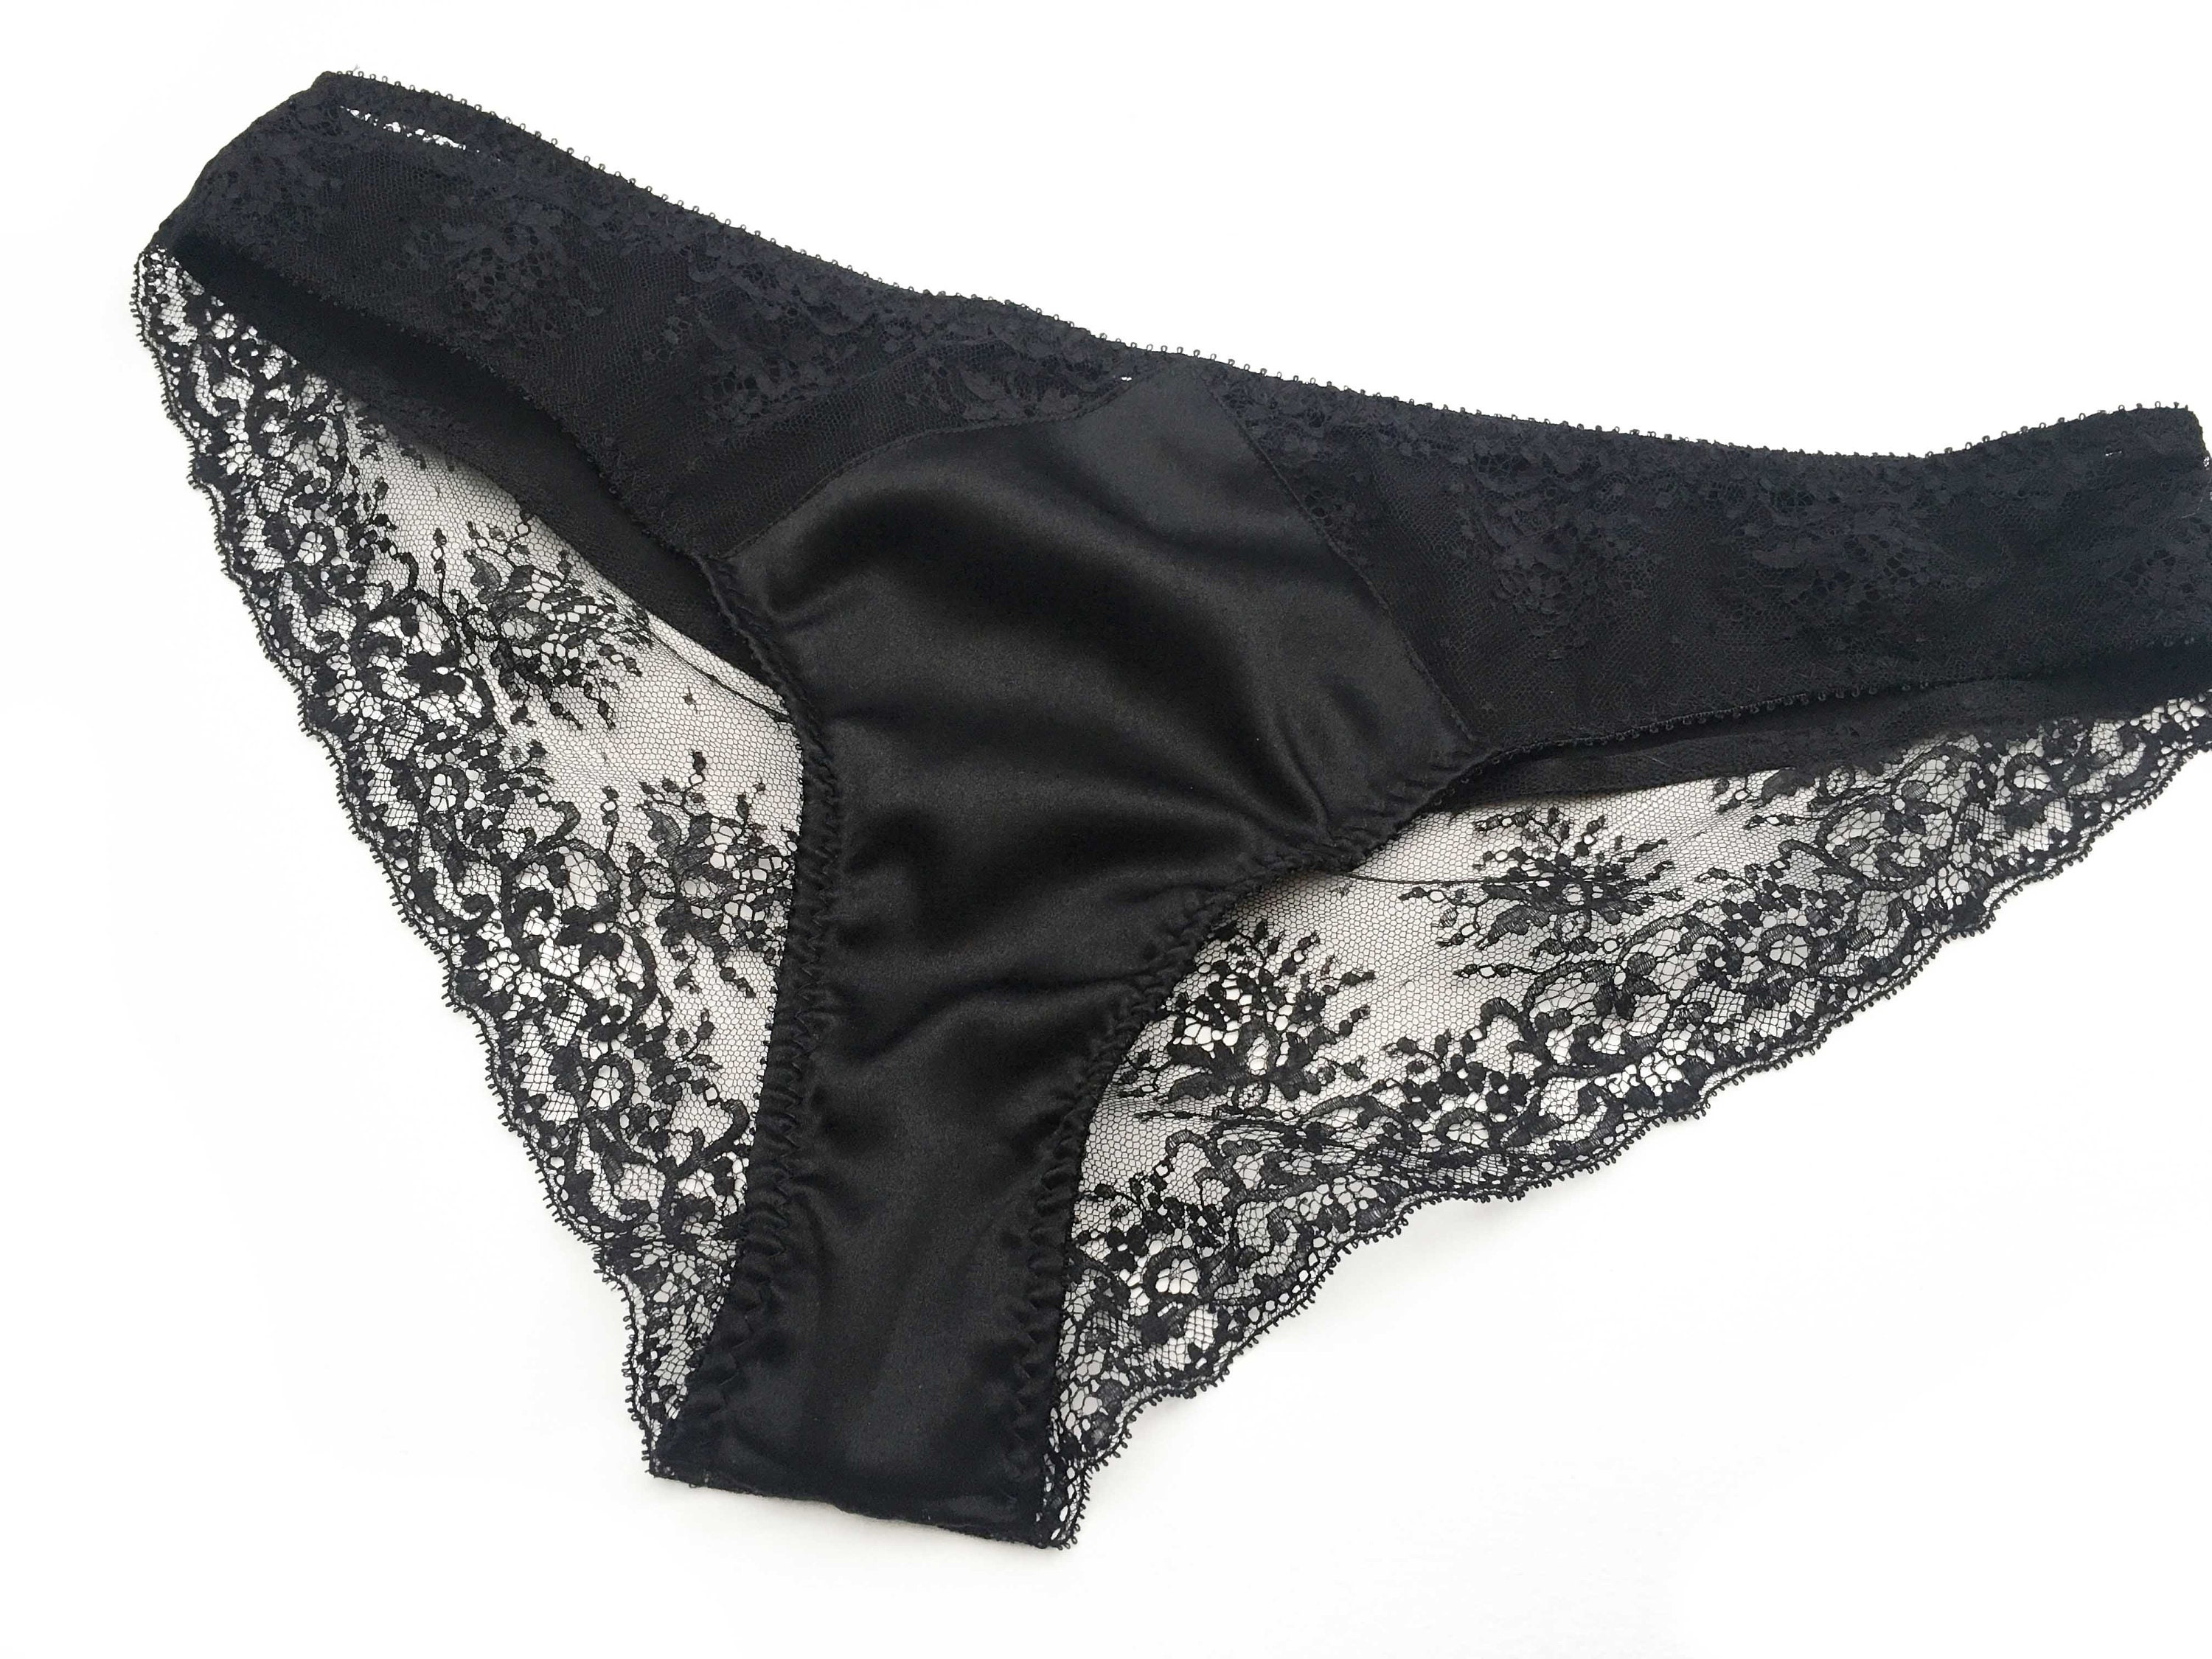 Lace Black Panties Lace Brief Black Lingerie - Etsy UK